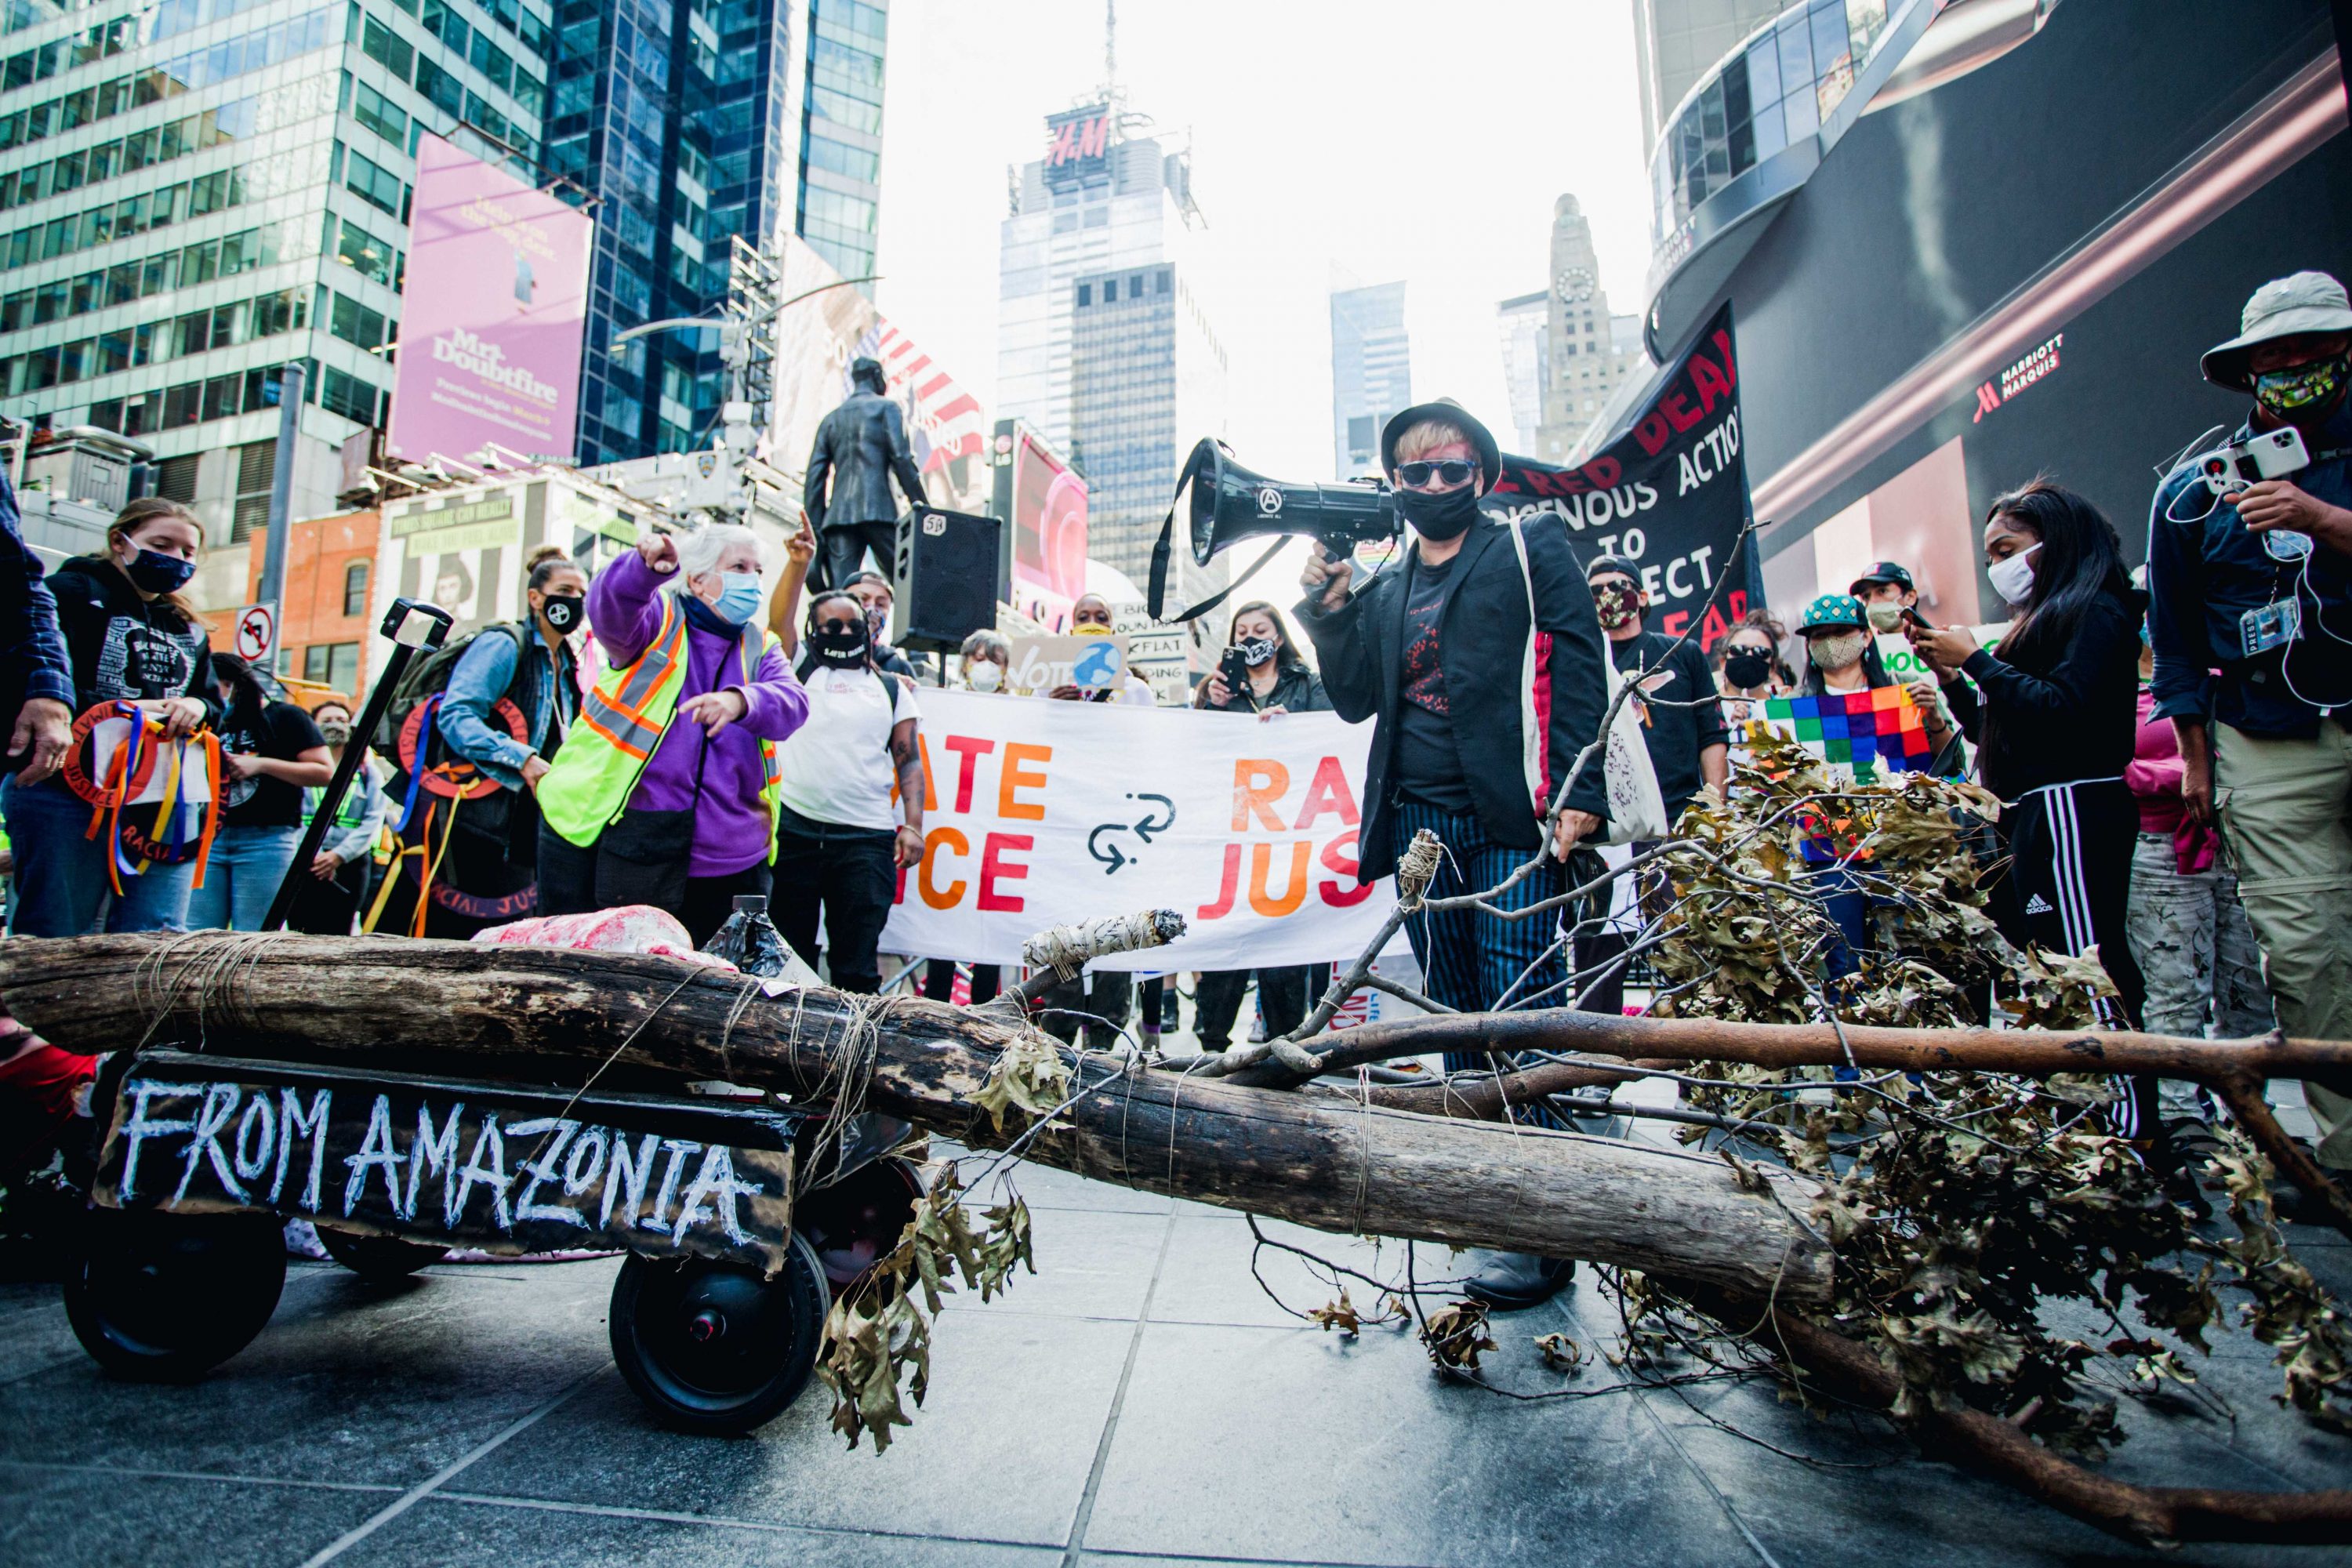 A artista plástica Adriana Varella da ANARKOARTLAB trouxe do Brooklyn até Manhattan, a pé, uma árvore queimada representando a Amazônia (foto: Tais Aquino)